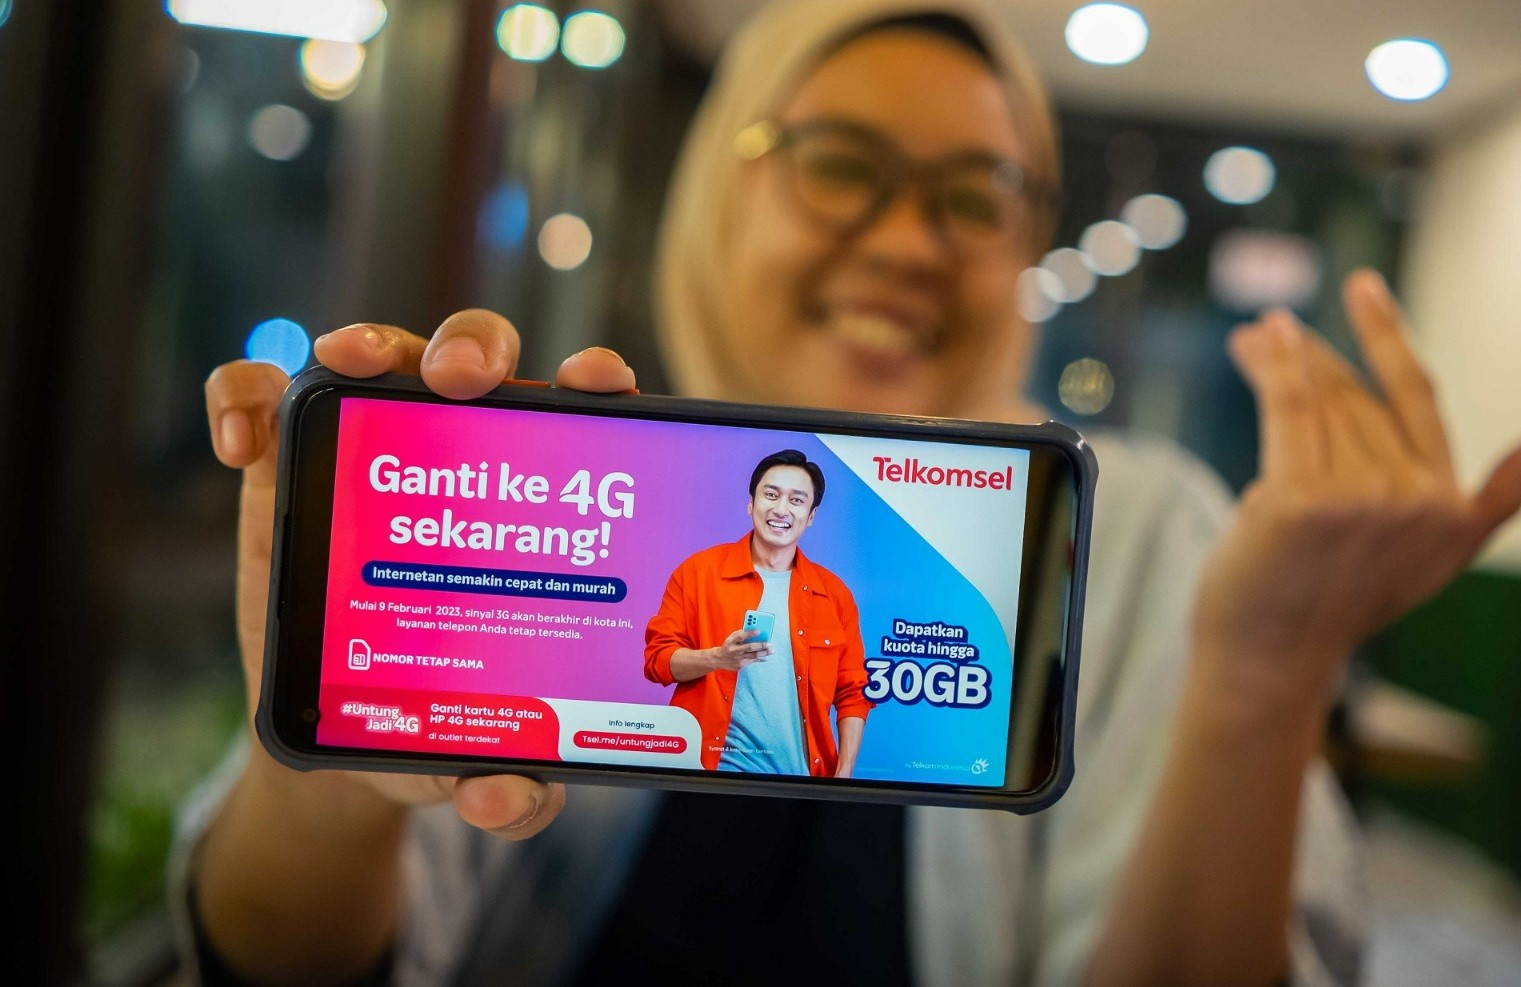 Mulai Februari 2023, Telkomsel Upgrade Layanan 3G ke 4G/LTE di 300 Kota/Kabupaten